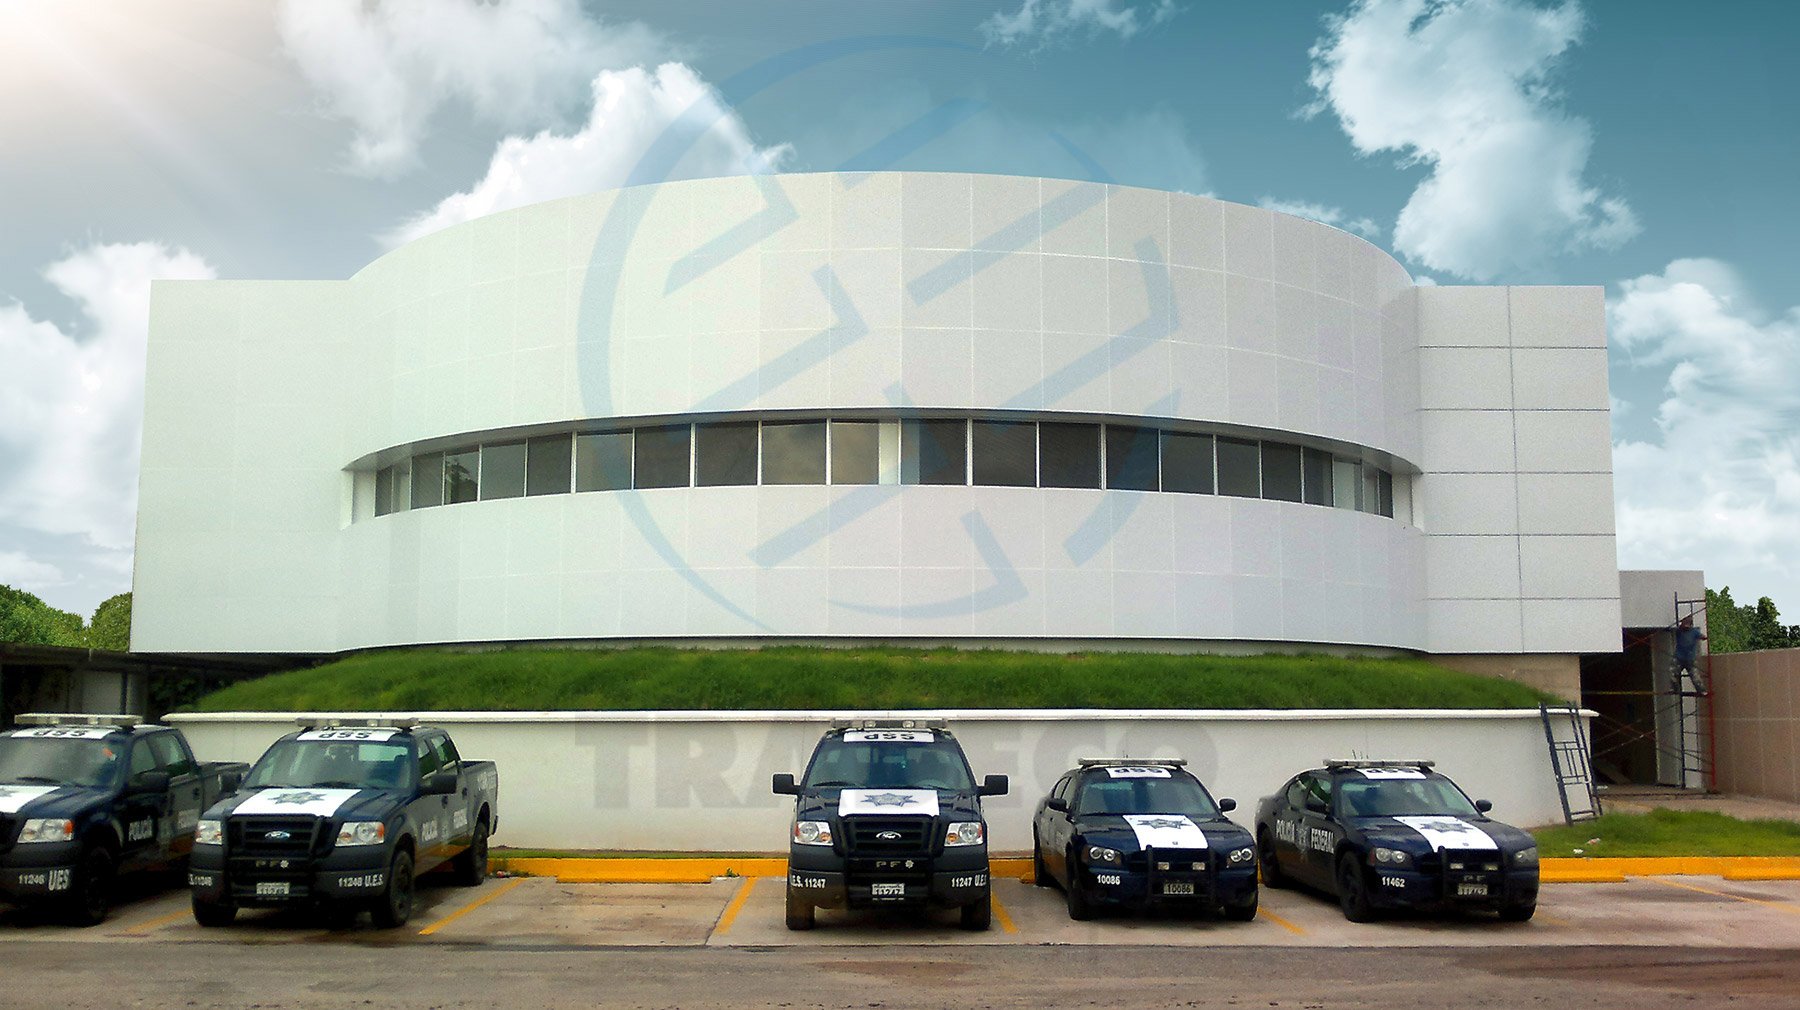 Estación de Policía de Culiacán